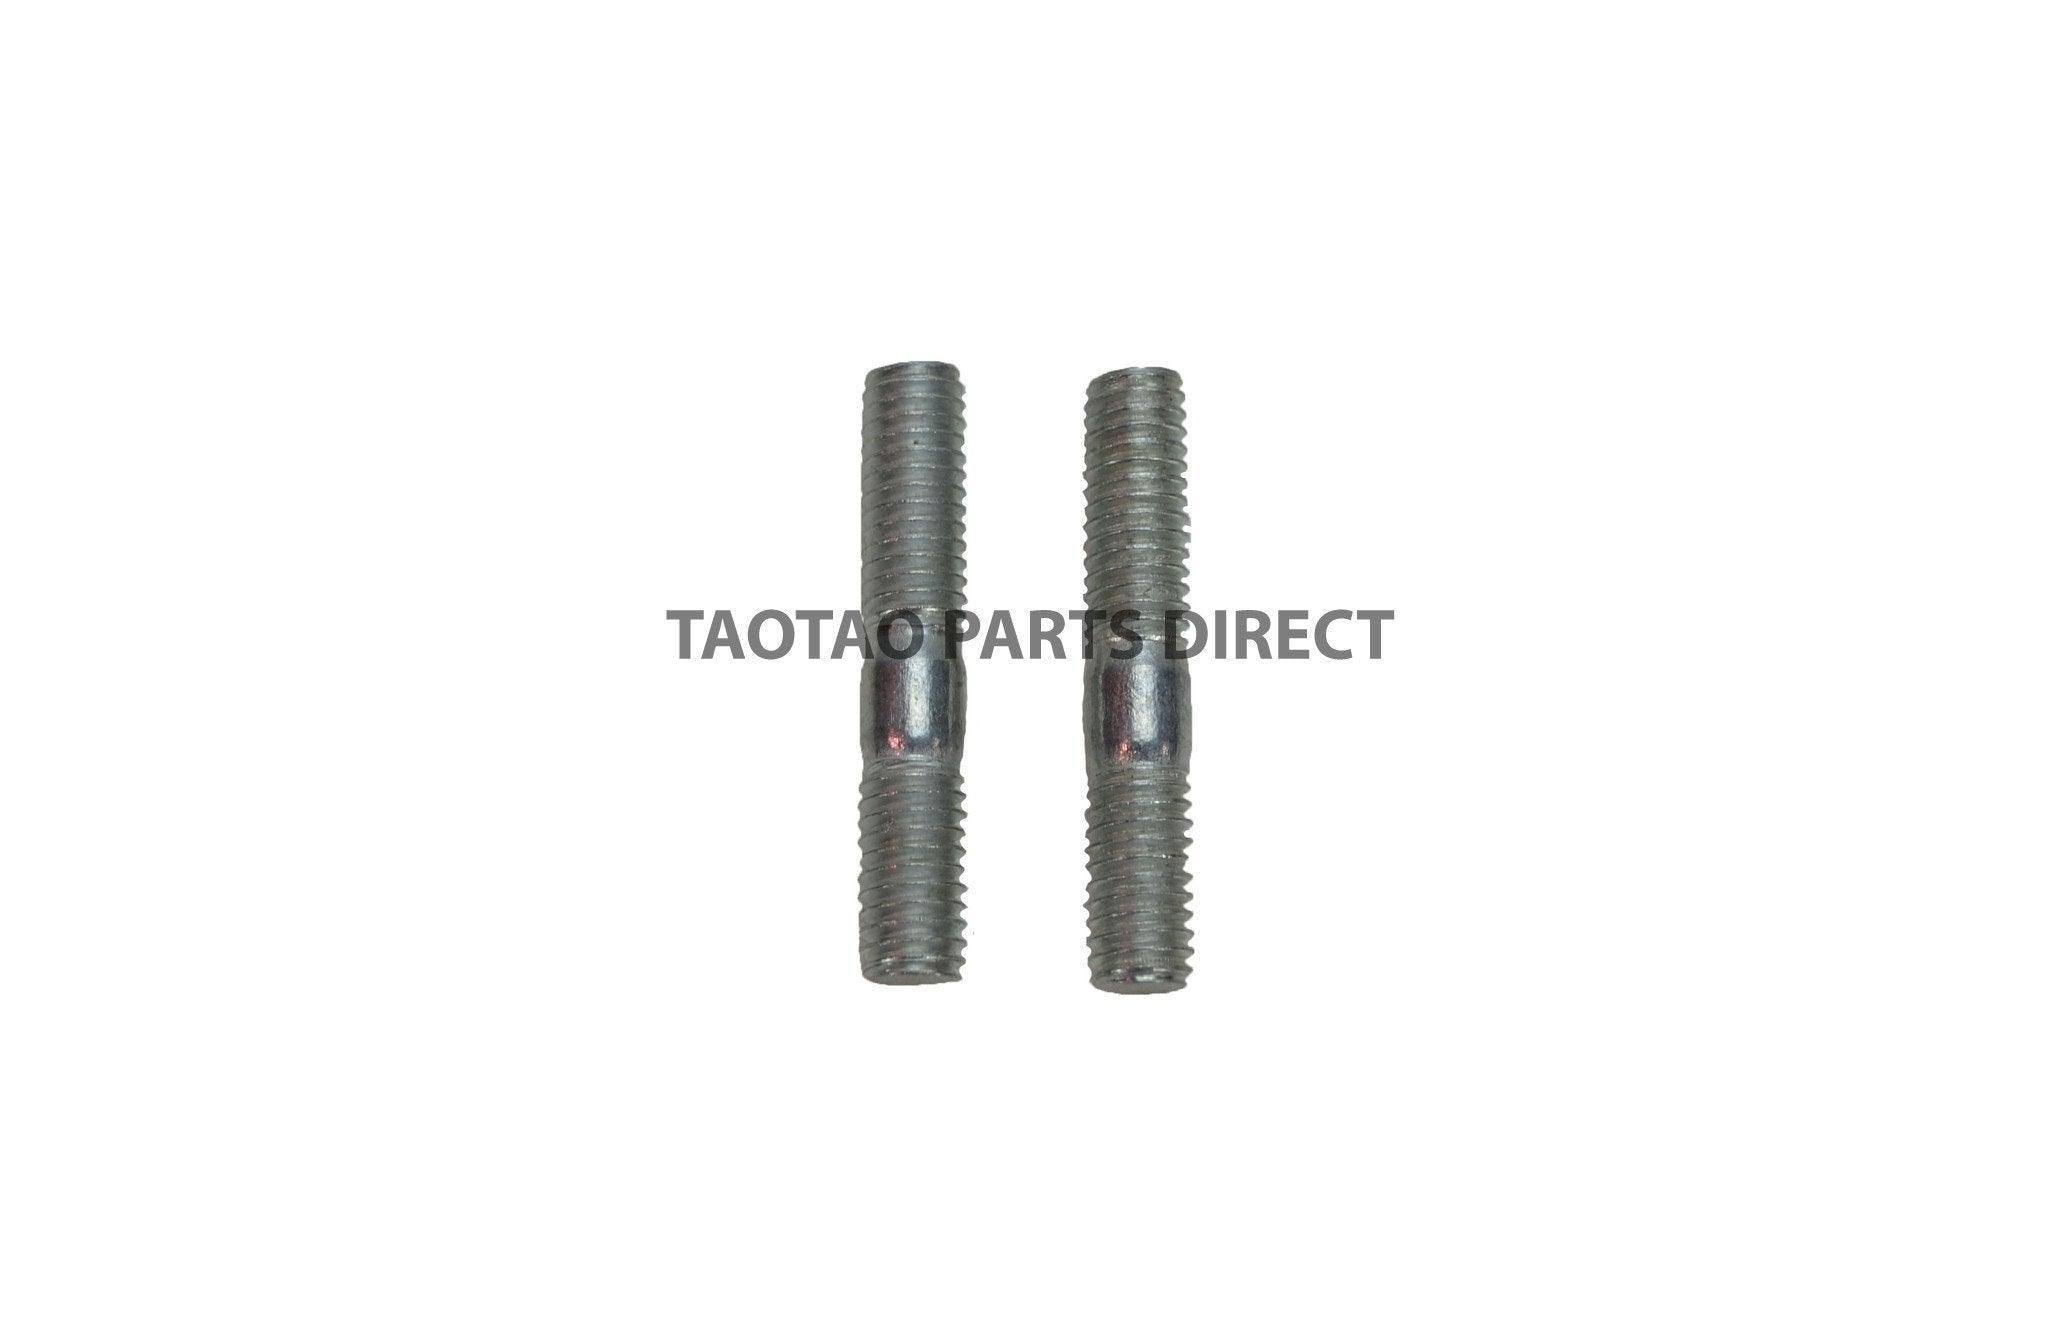 6mm Exhaust Studs - TaoTaoPartsDirect.com